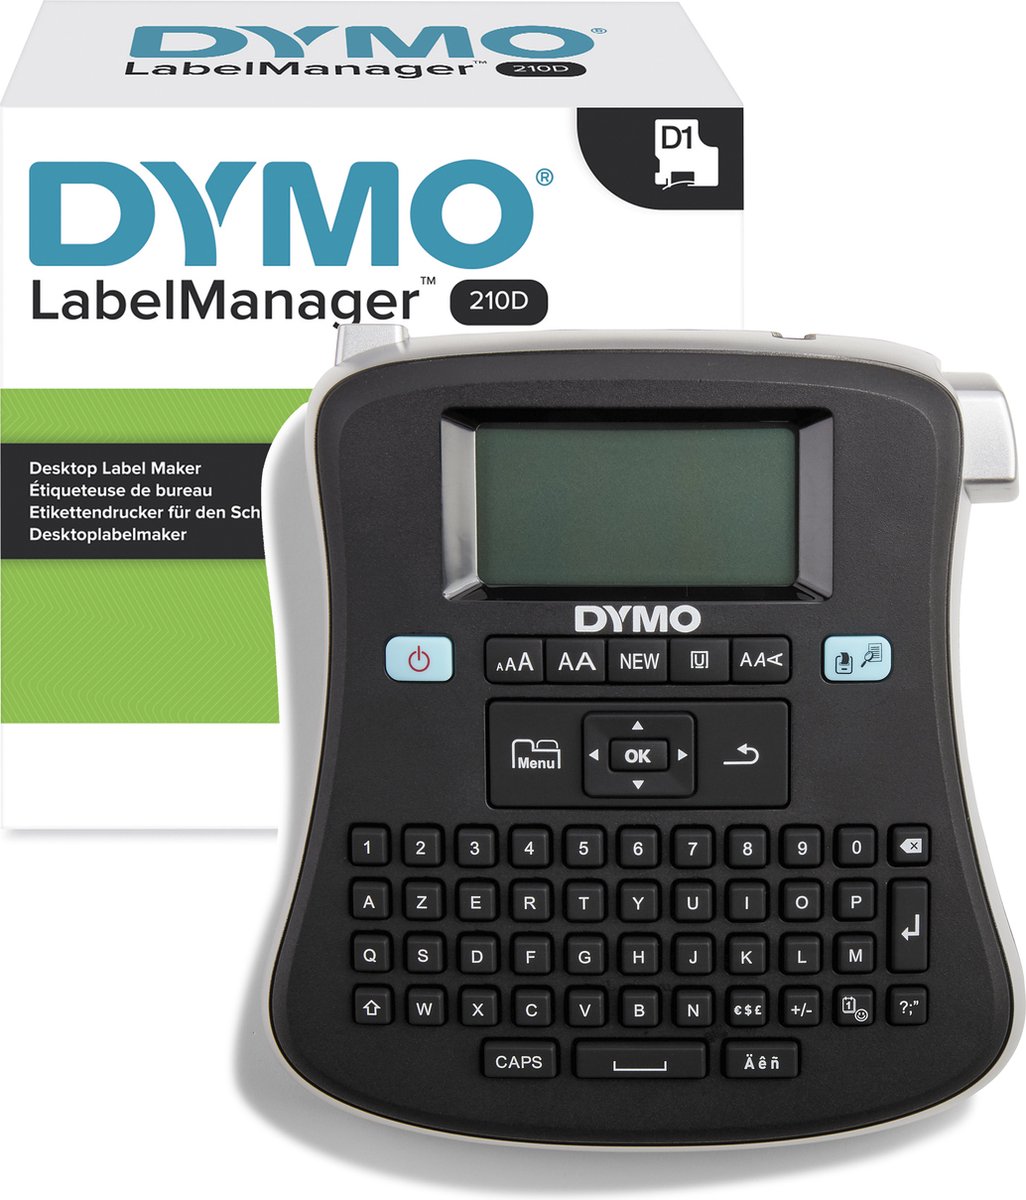 DYMO LabelManager 210D-labelmaker | Desktoplabelprinter | Draagbare labelmaker met AZERTY-toetsenbord | Groot scherm en toetsen voor snelle toegang | Voor kantoor- en thuisgebruik - DYMO